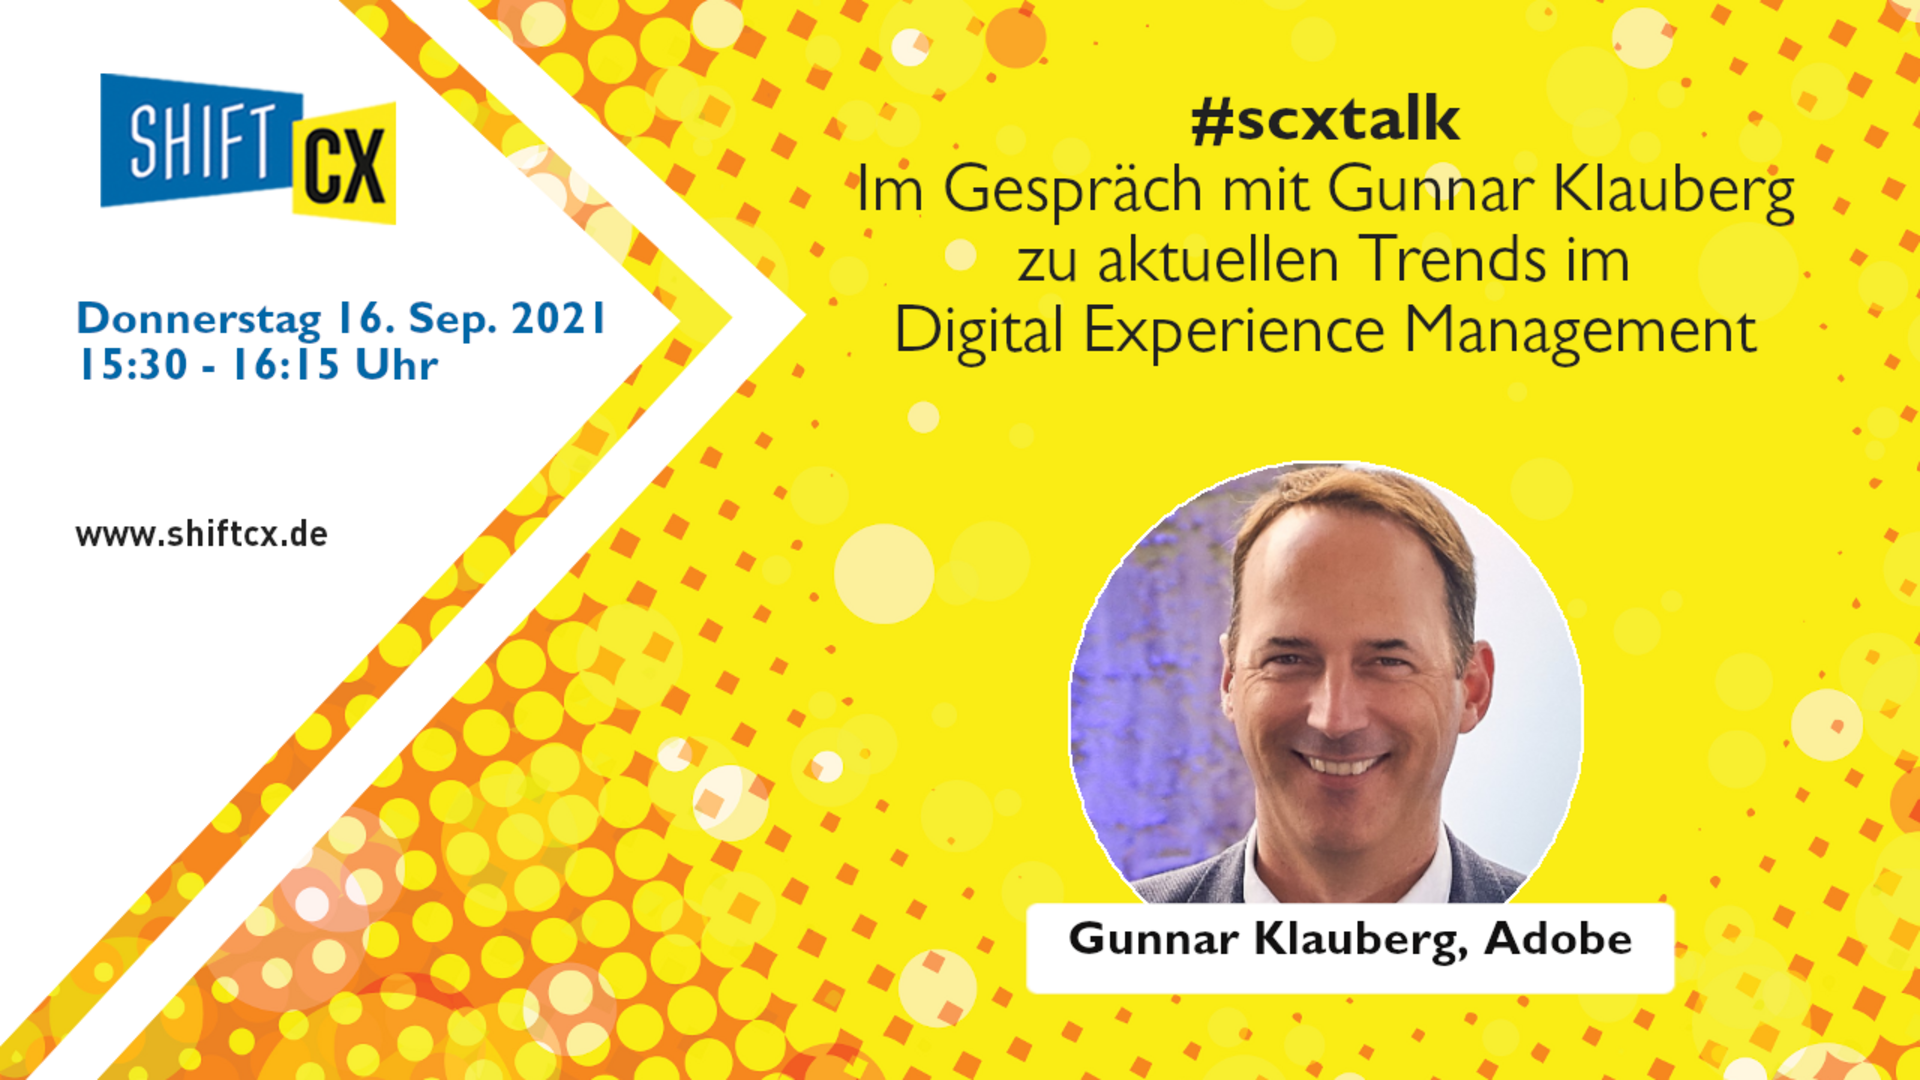 Im Gespräch mit Gunnar Klauberg zu den Trends im Digital Experience Management